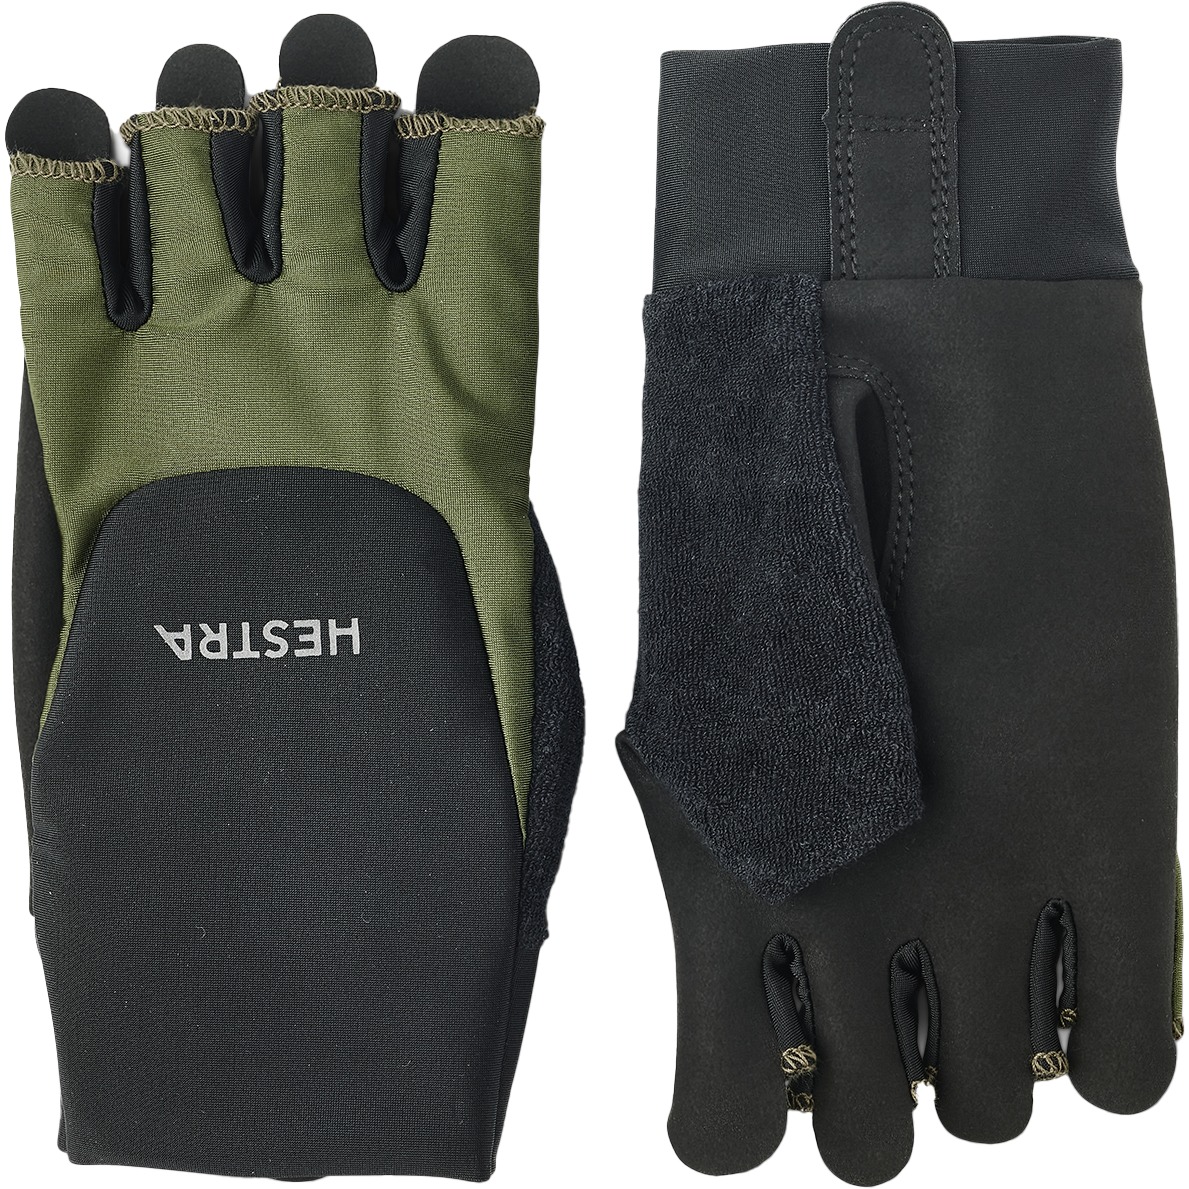 Productfoto van Hestra Sprint Short - 5 Finger Fietshandschoenen - olijf / zwart